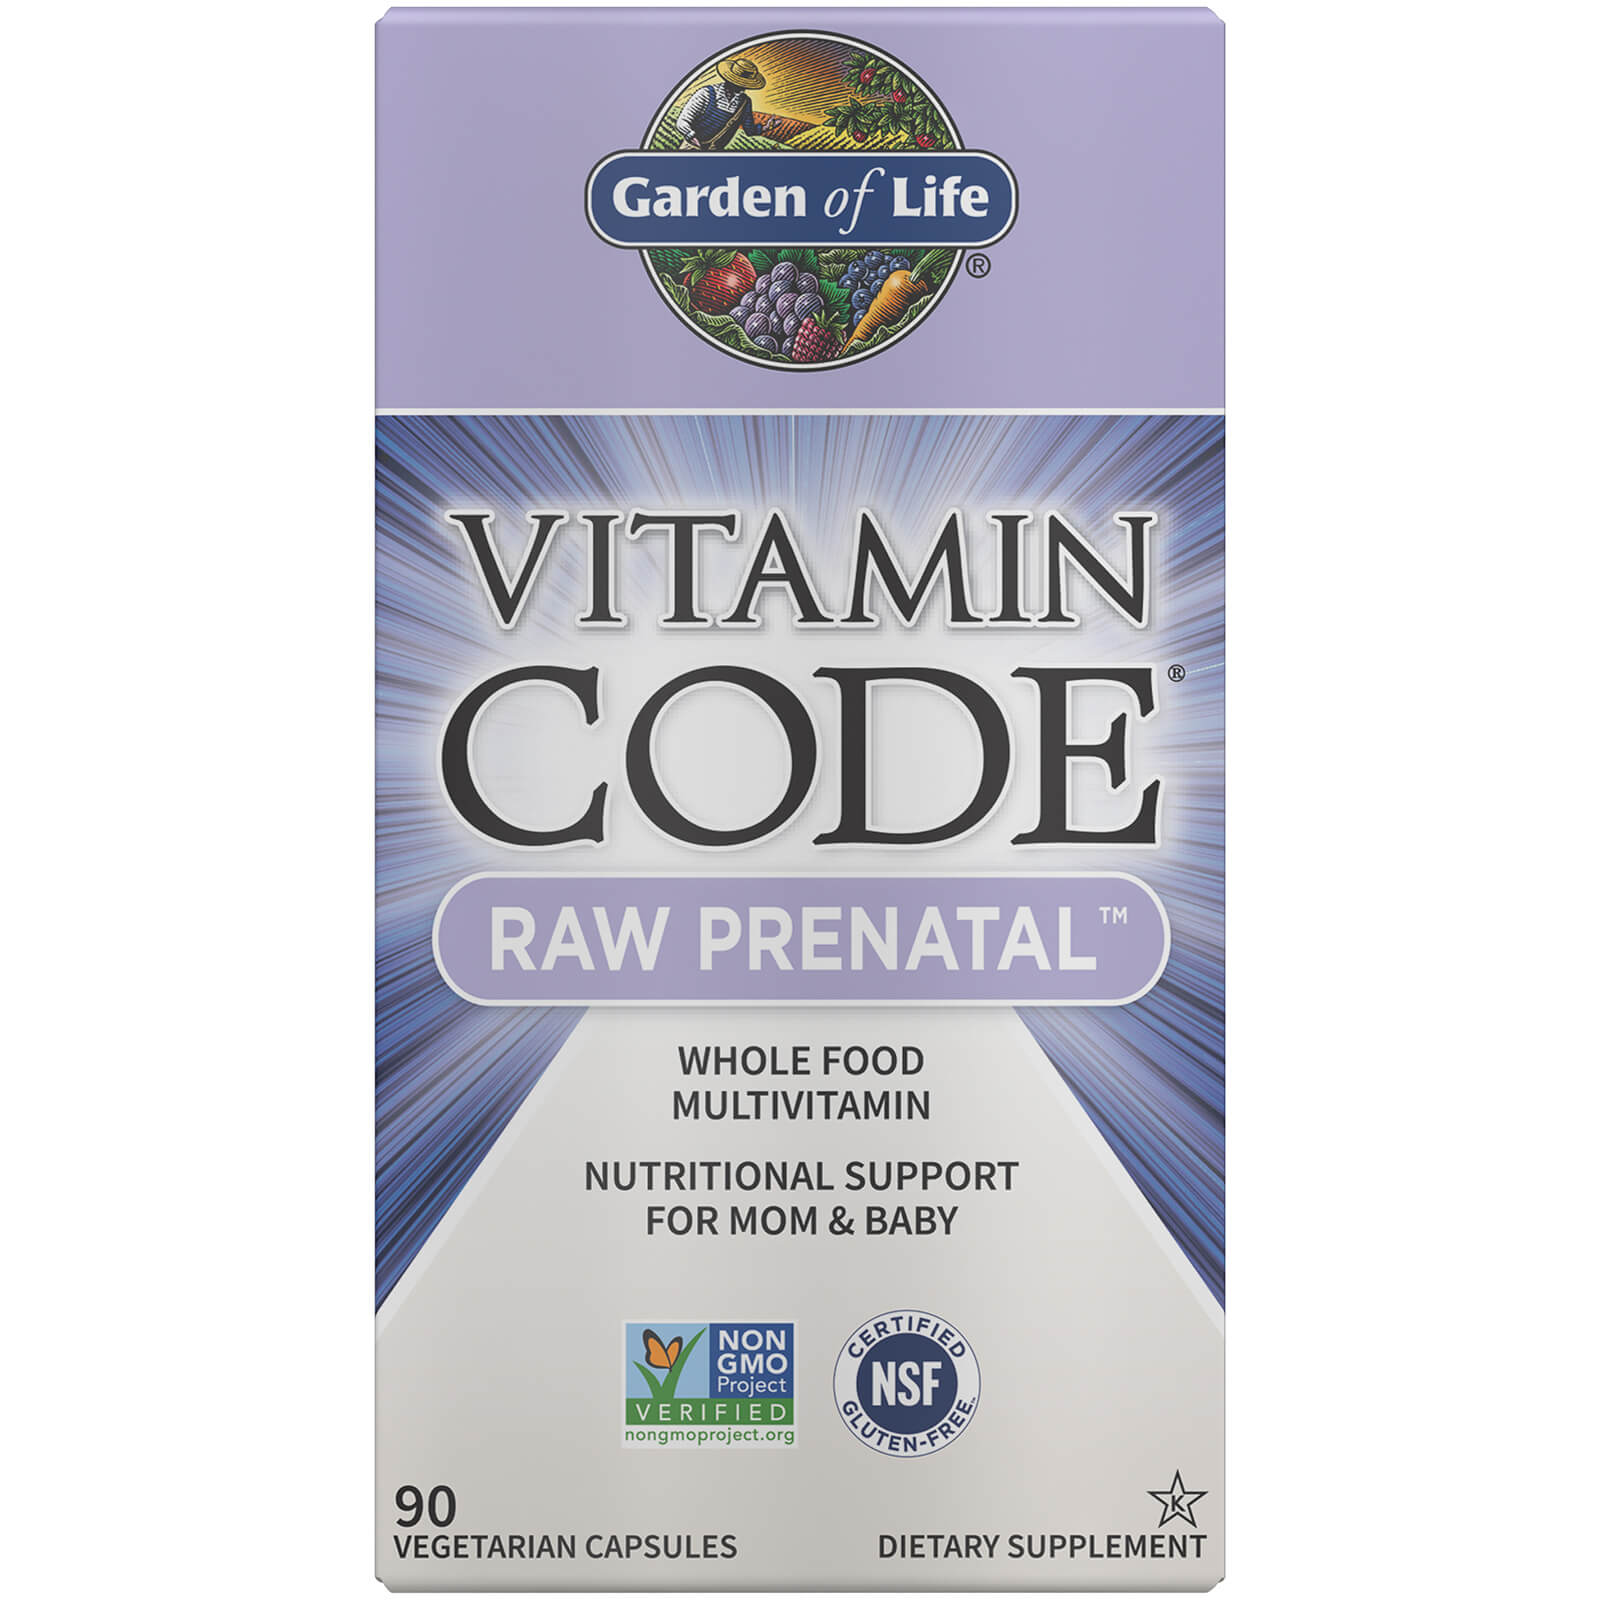 Garden of Life Vitamin Code Raw Prenatal 90ct Capsules